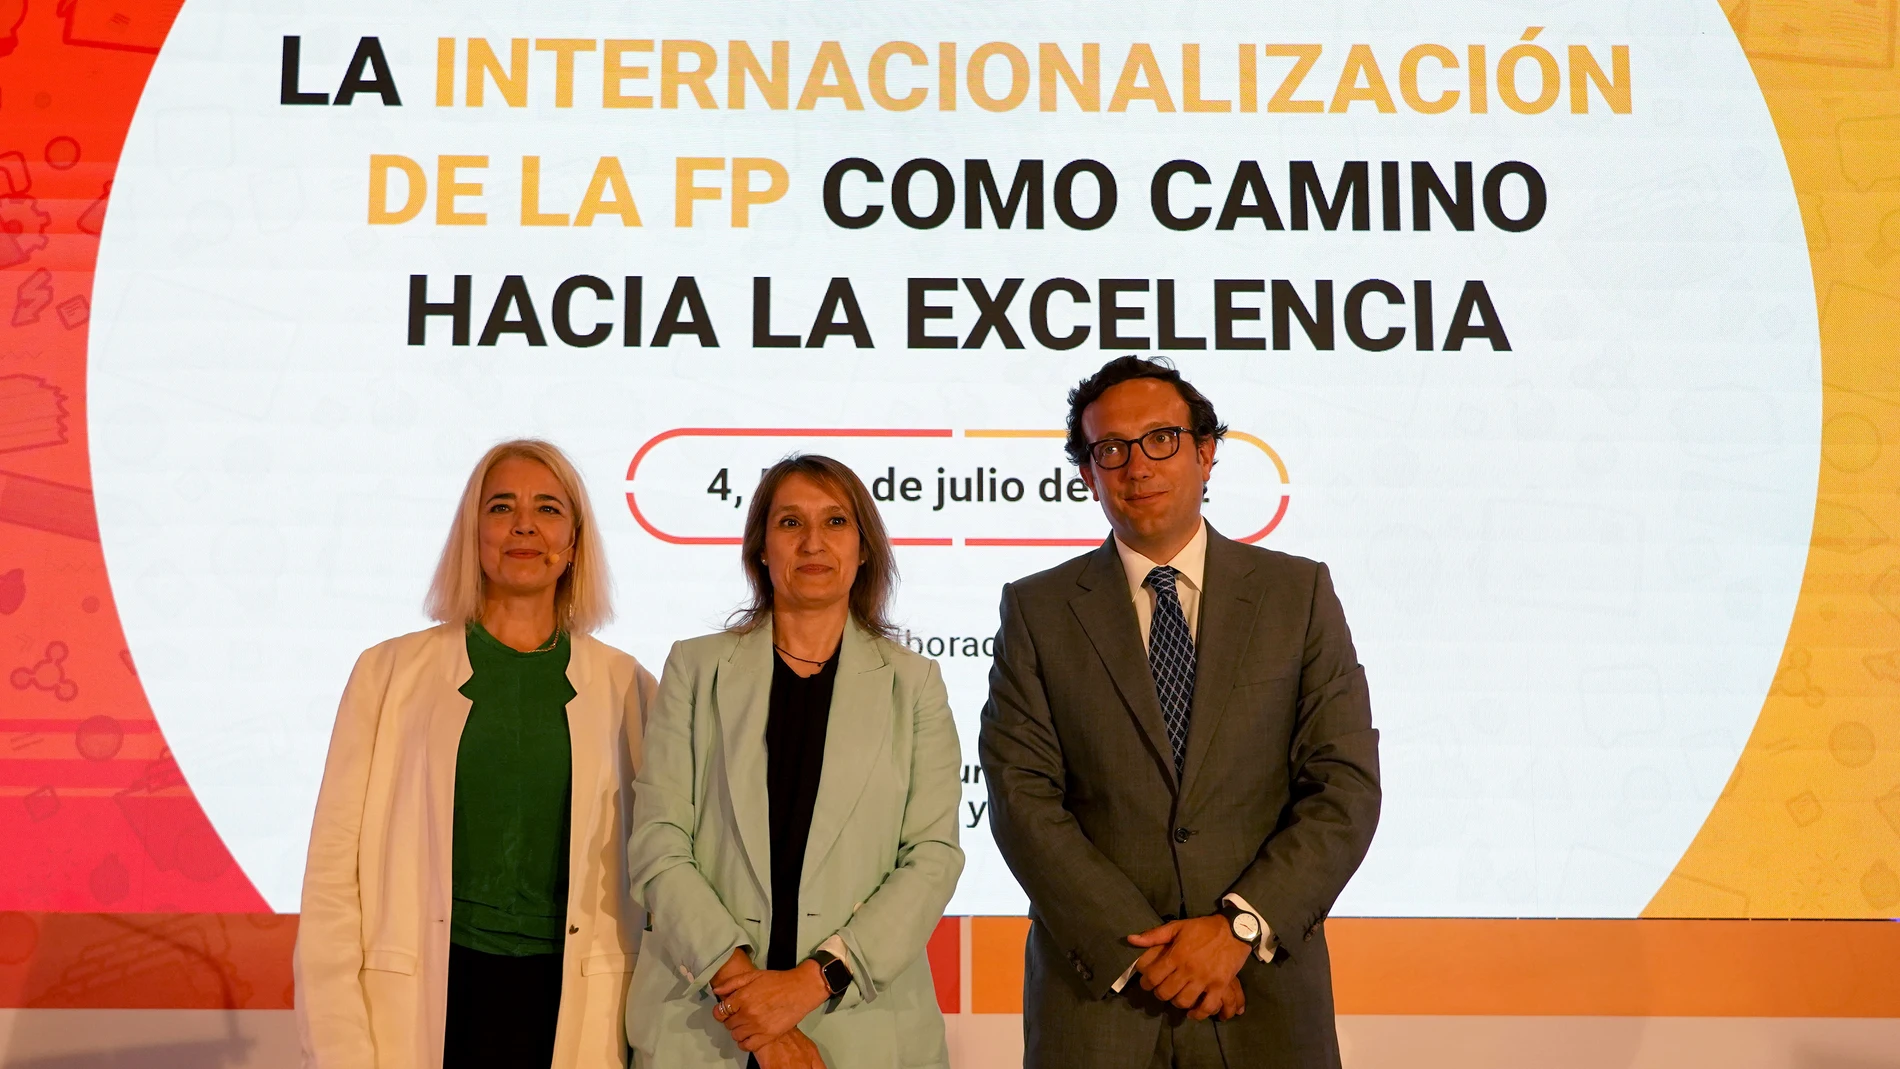 La consejera de Educación, Rocío Lucas, participa en la inauguración de la jornada nacional "La internacionalización de la FP como camino hacia la excelencia"